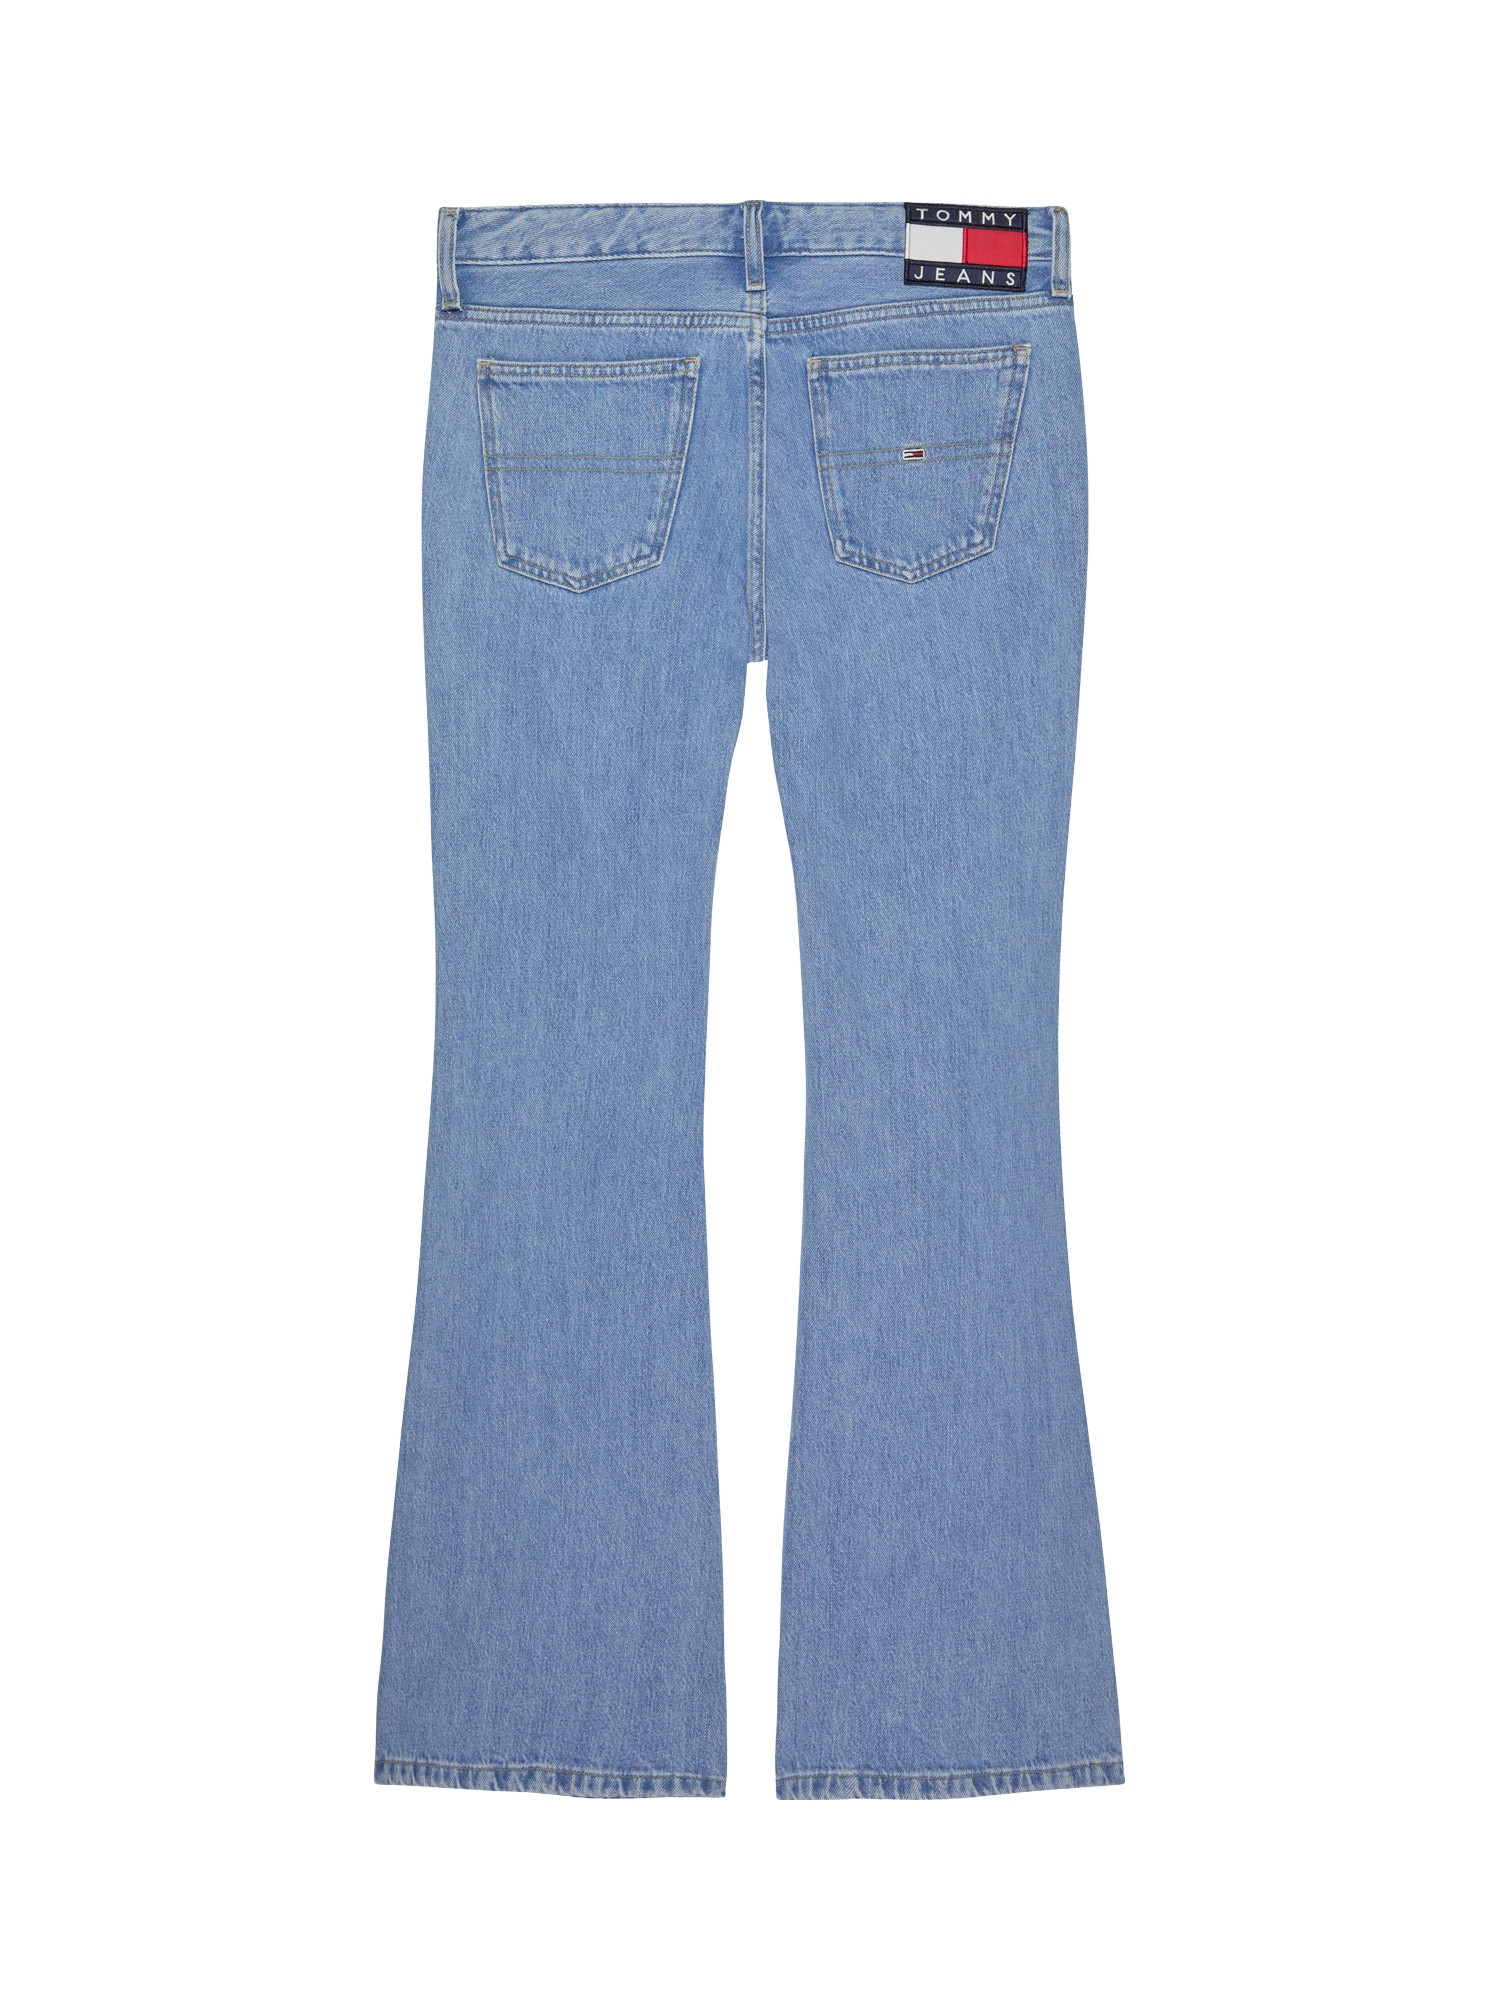 Tommy Jeans - Low rise five pocket jeans, Denim, large image number 1